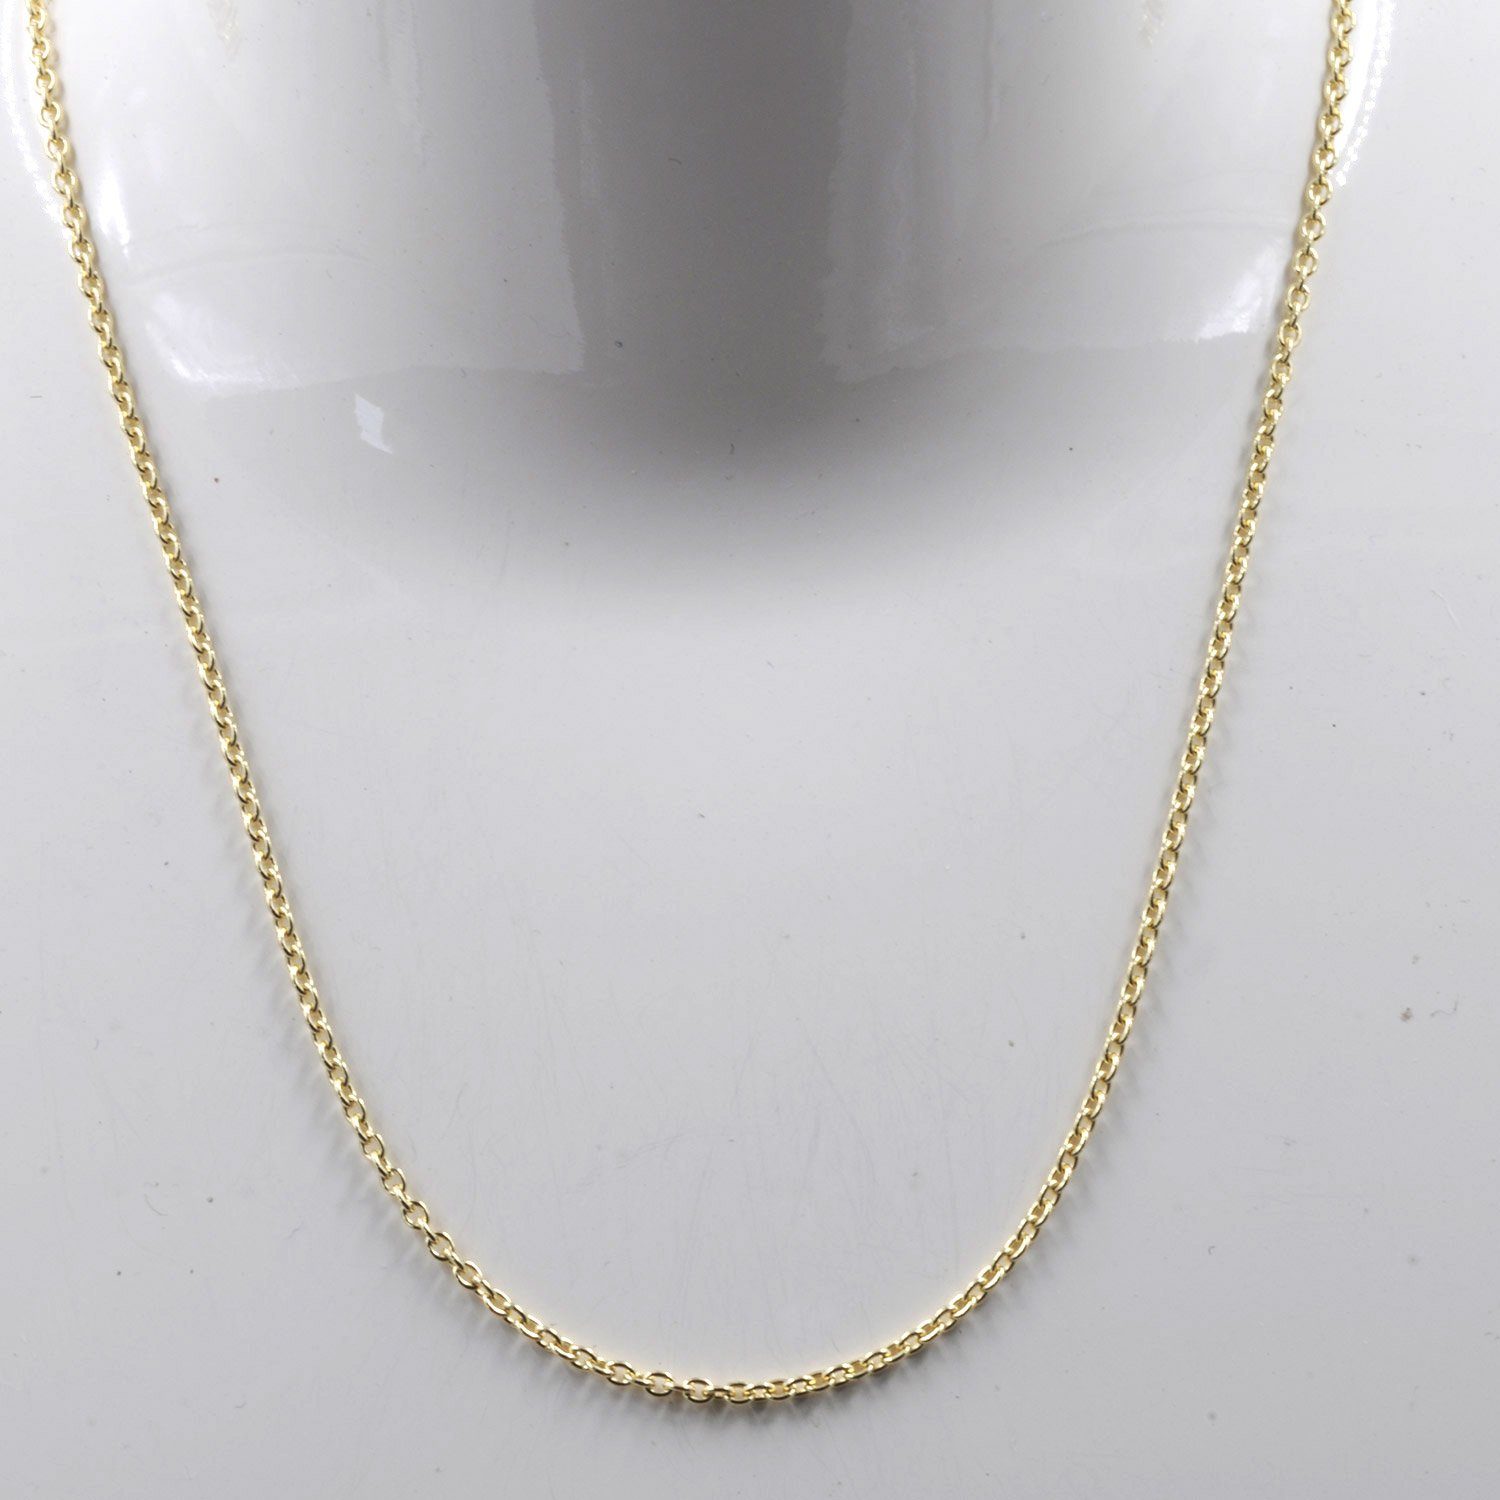 Herren Schmuck HOPLO Goldkette 1,5 mm 333 - 8 Karat Gold Halskette Ankerkette rund massiv Gold hochwertige Goldkette - Länge nac